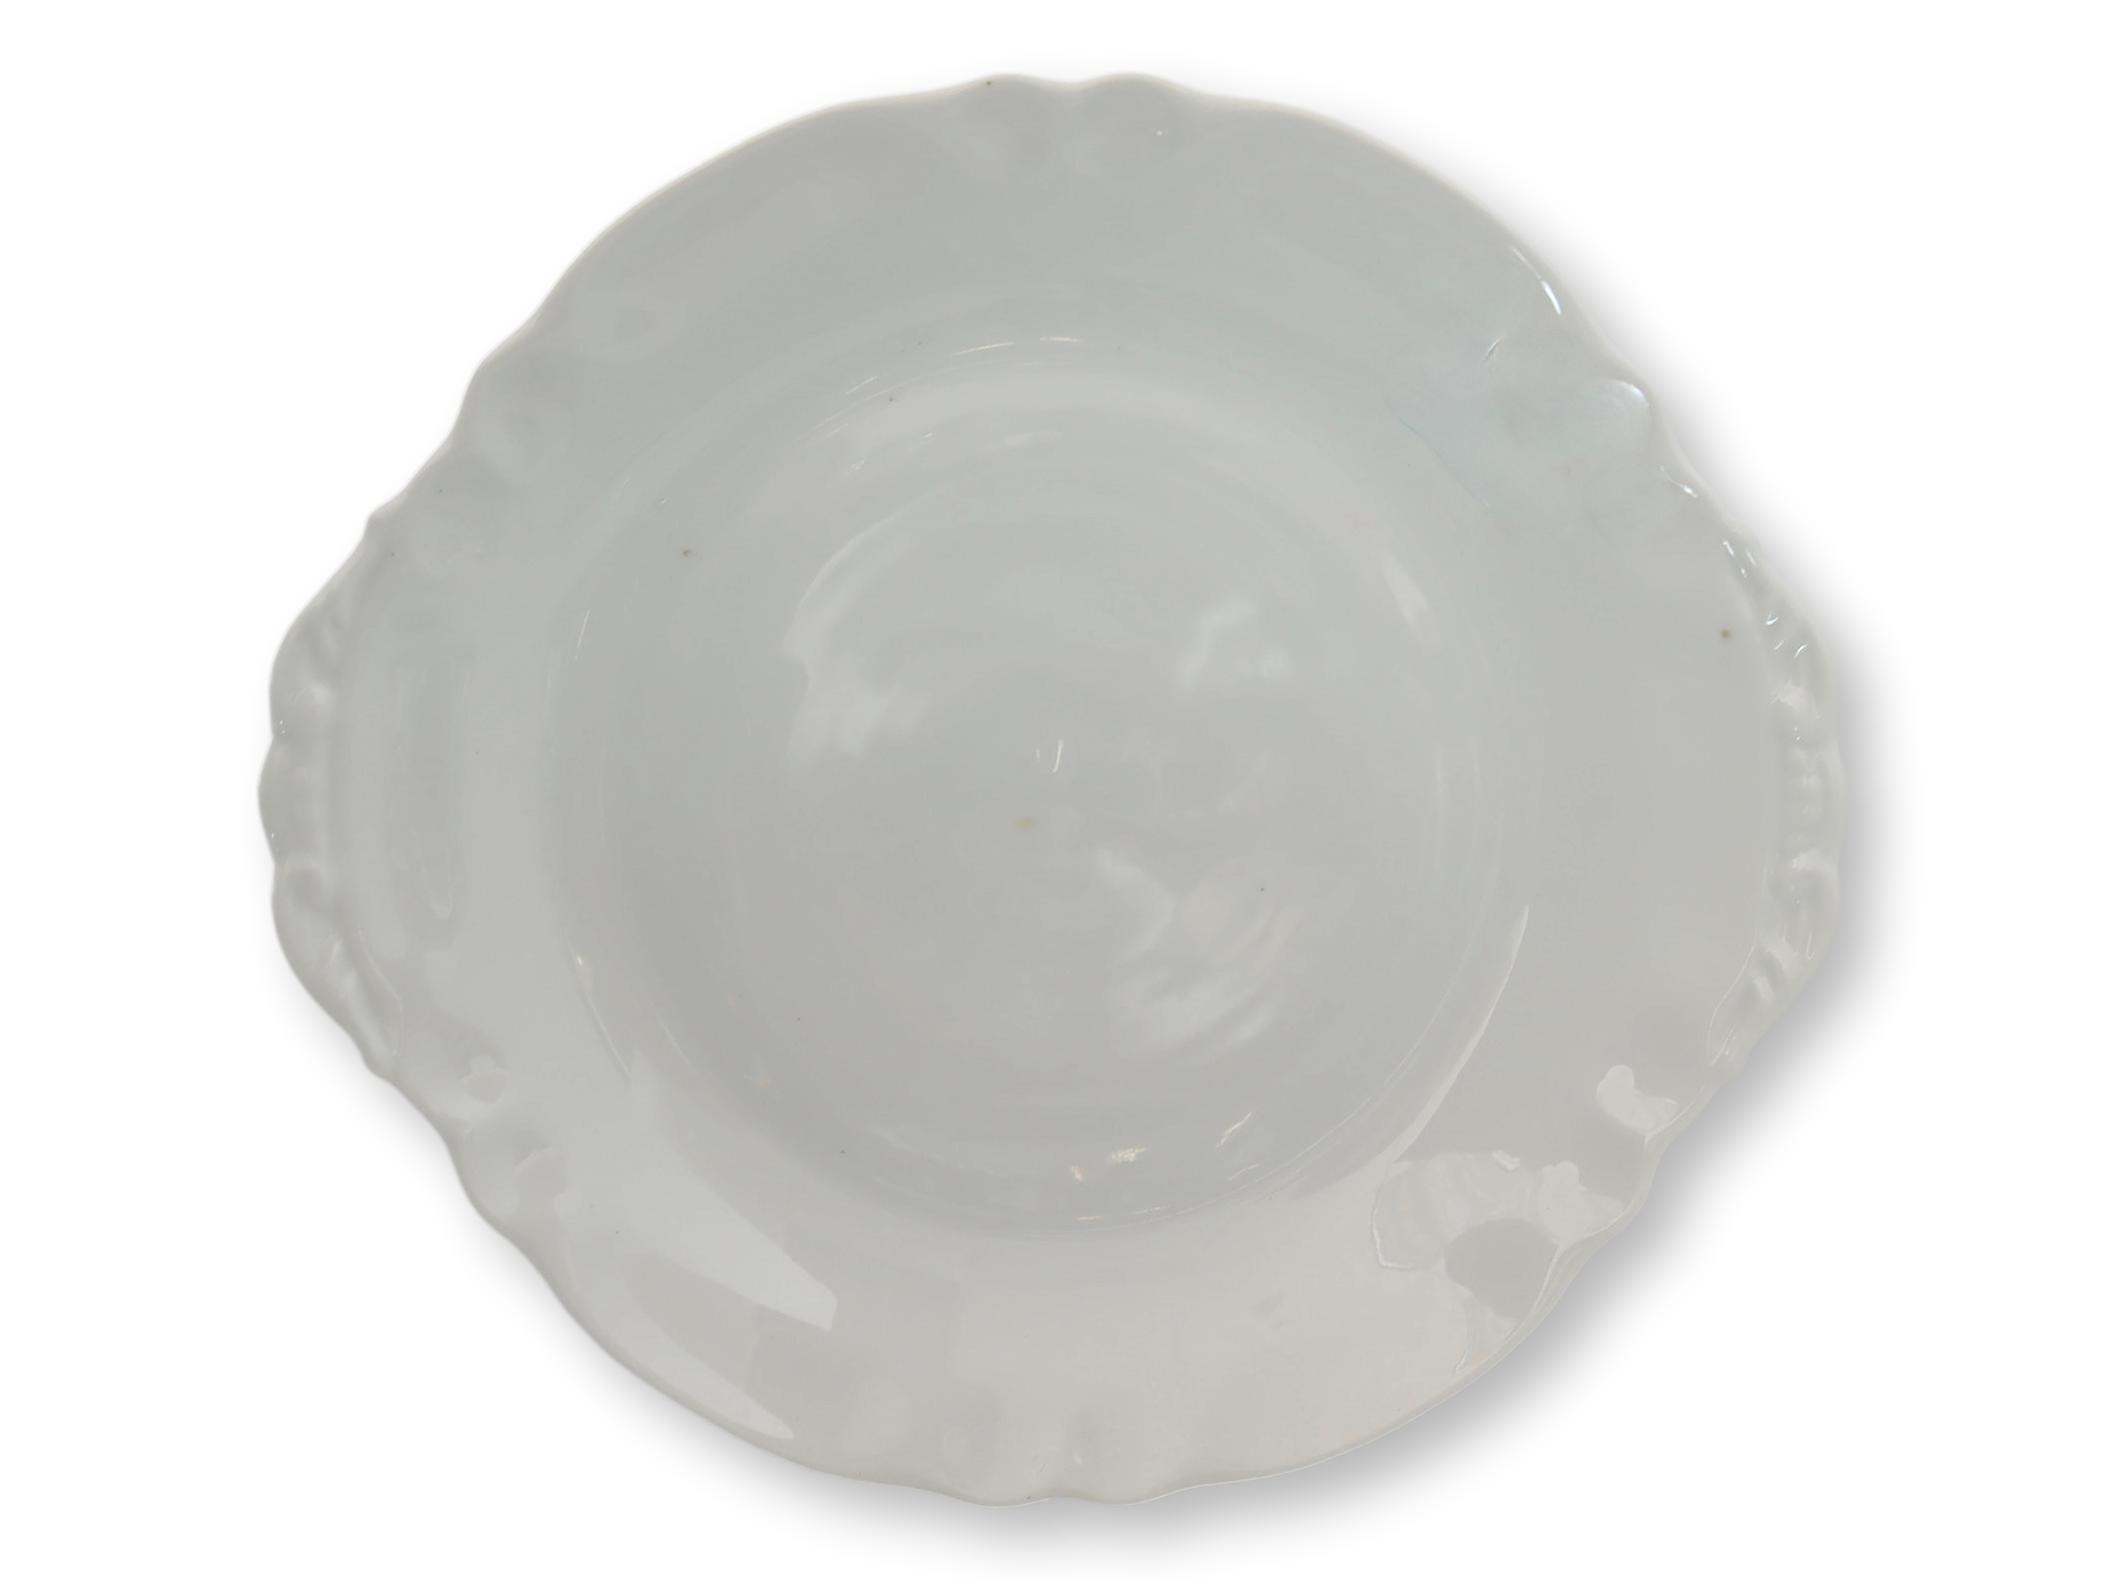 French Porcelain Serving Plates, 3 pcs~P77673148